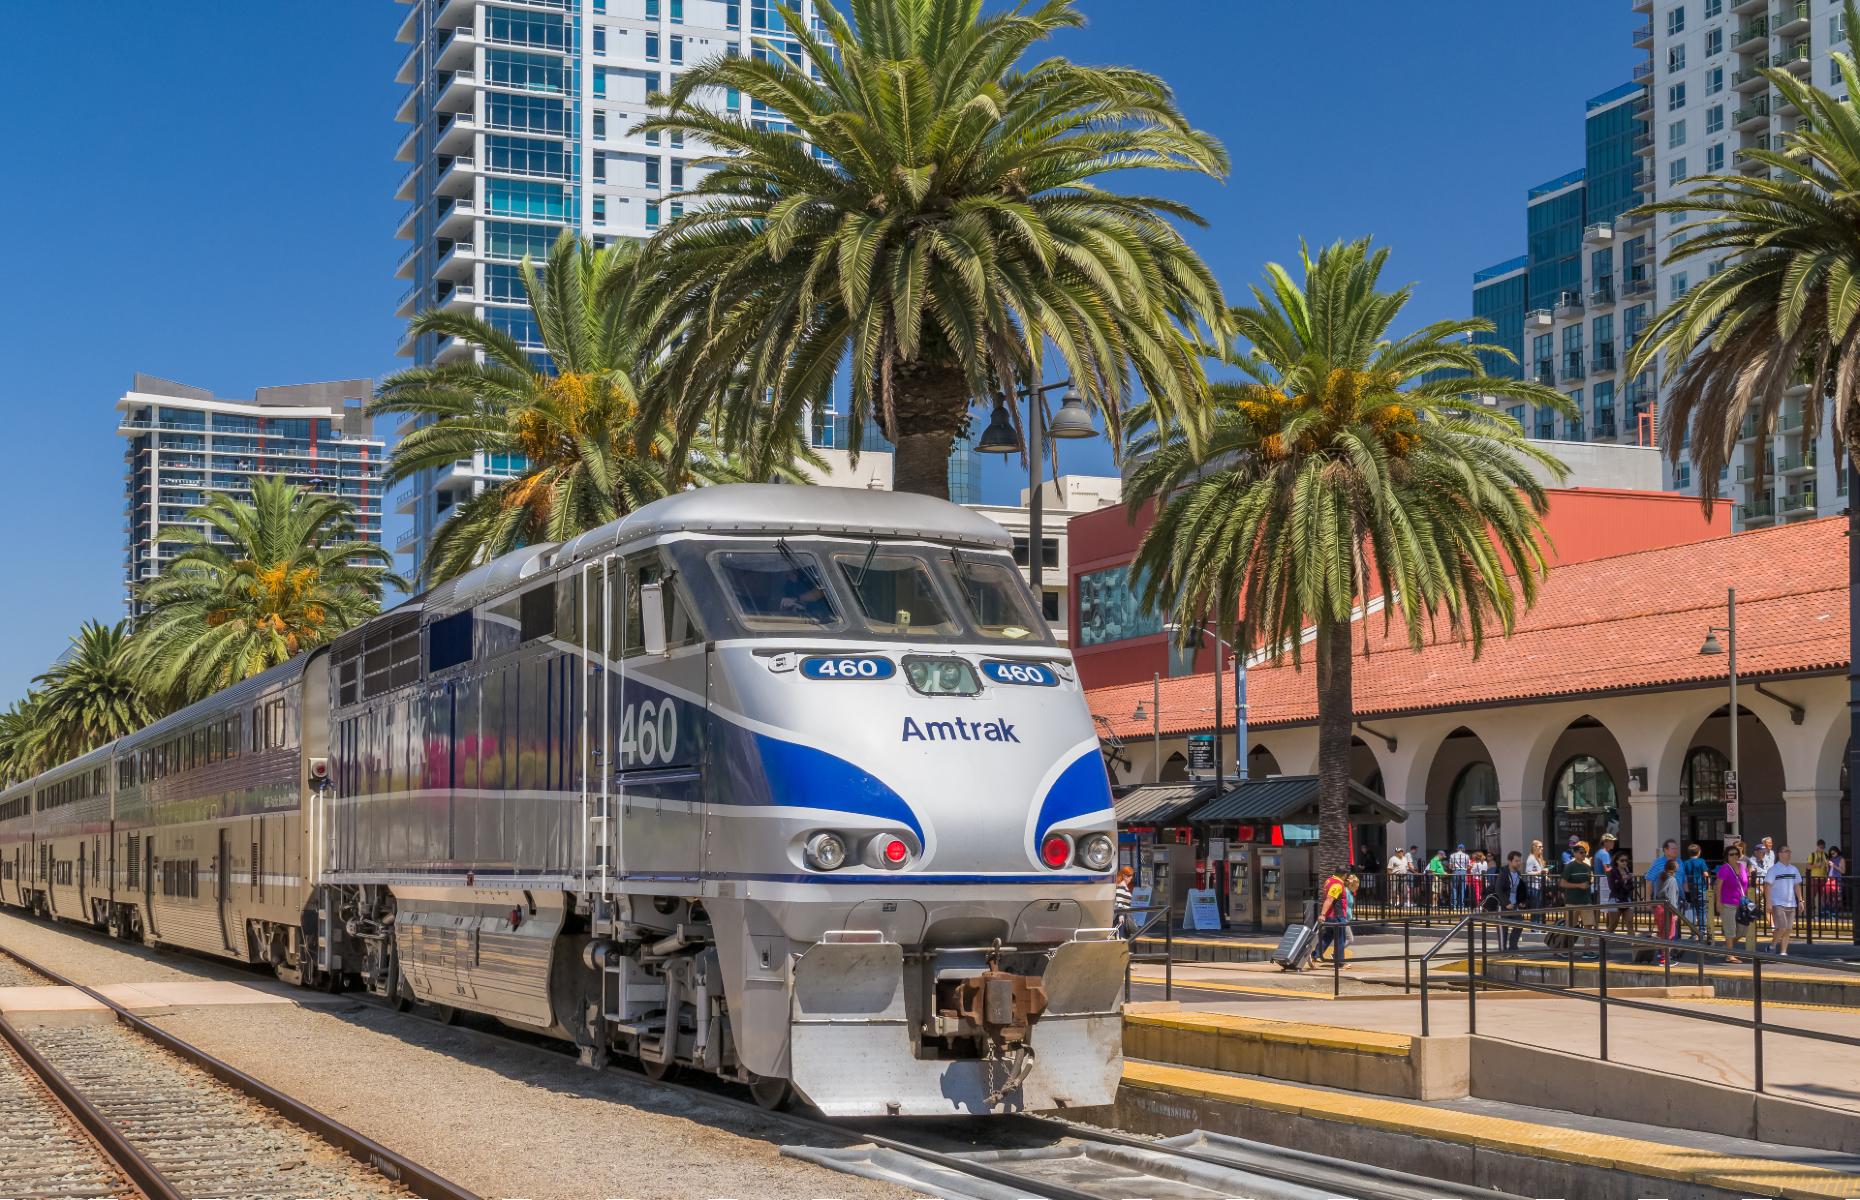 Amtrak in San Diego (Image: Ken Wolter/Shutterstock)